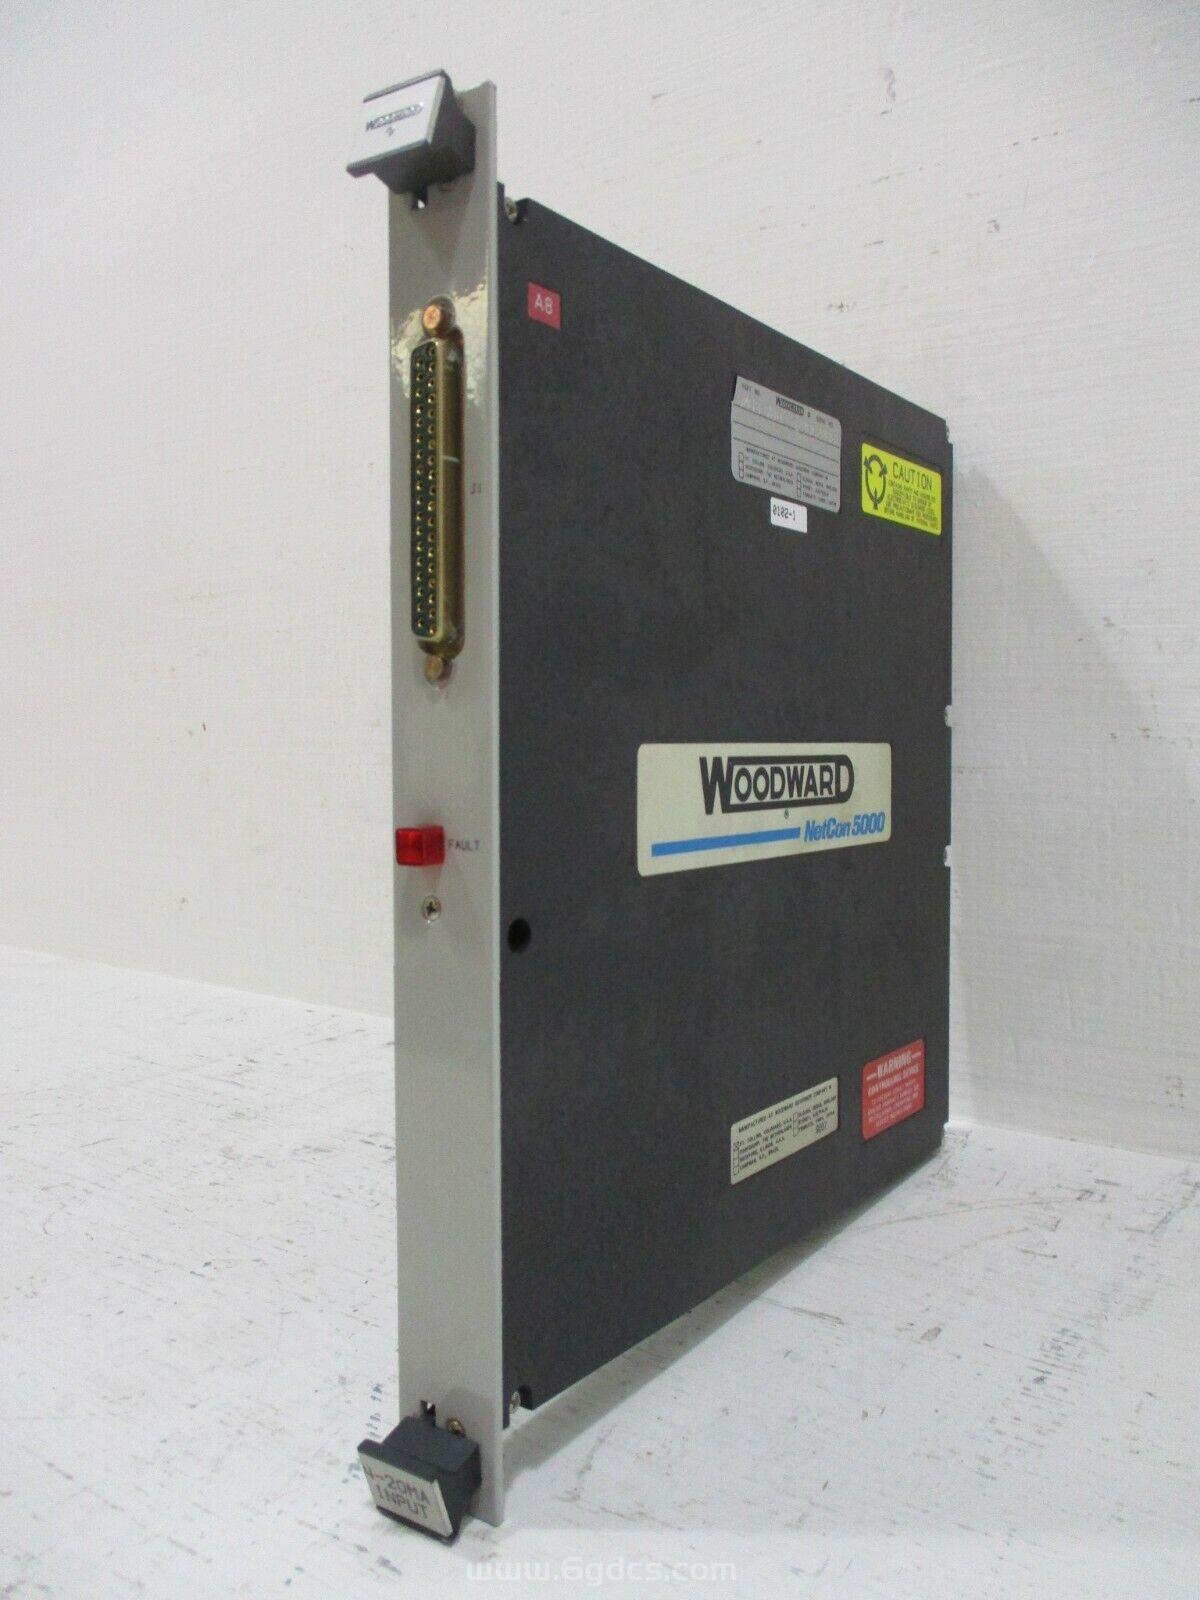 (5501-429 控制器模块)原装 Woodward 伍德沃德的模块 全新进口现货供应